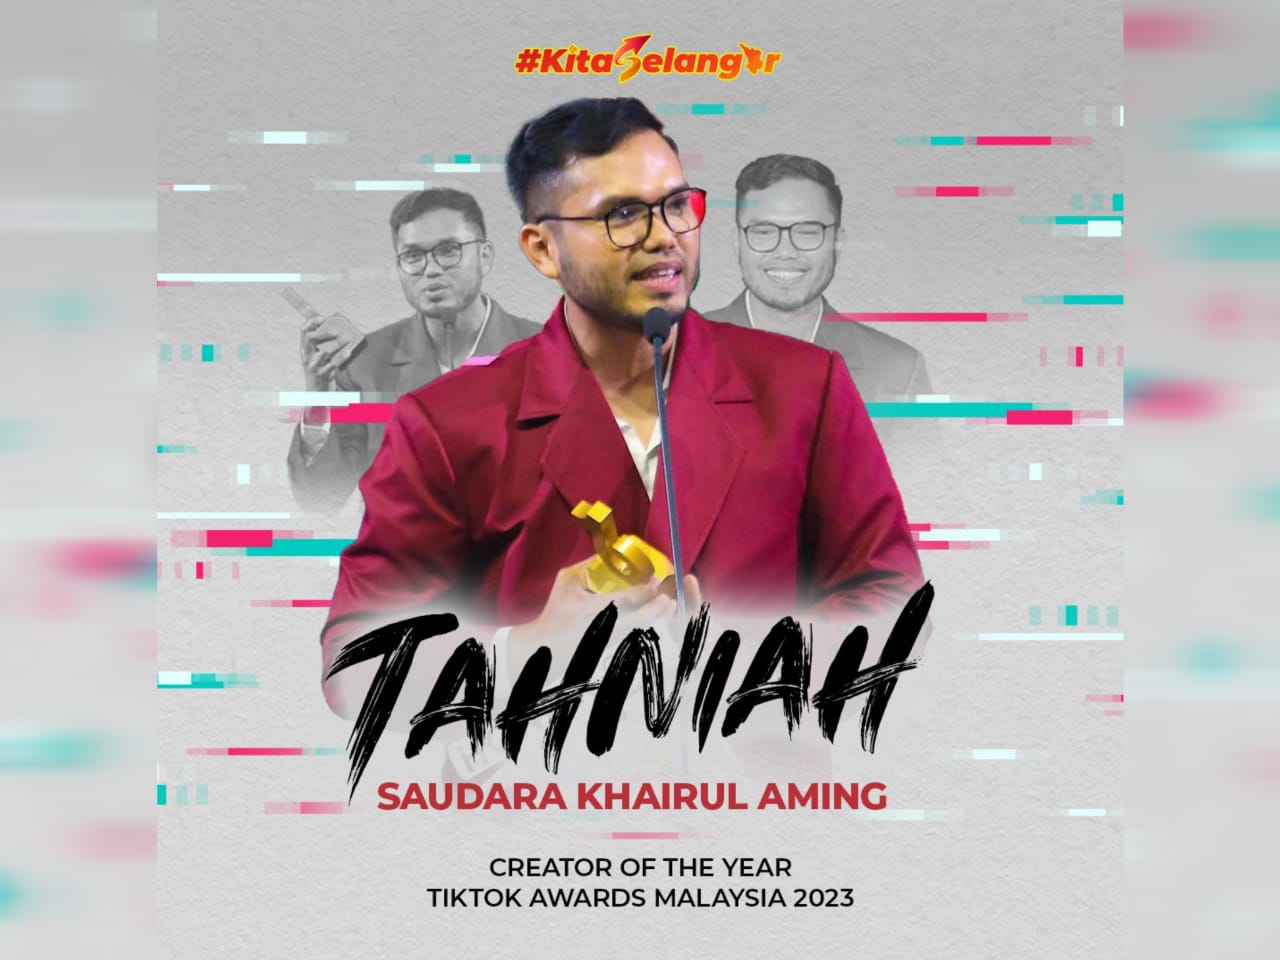 Pesanan Khairul Aming, motivasi terbaik buat anak muda – MB Selangor